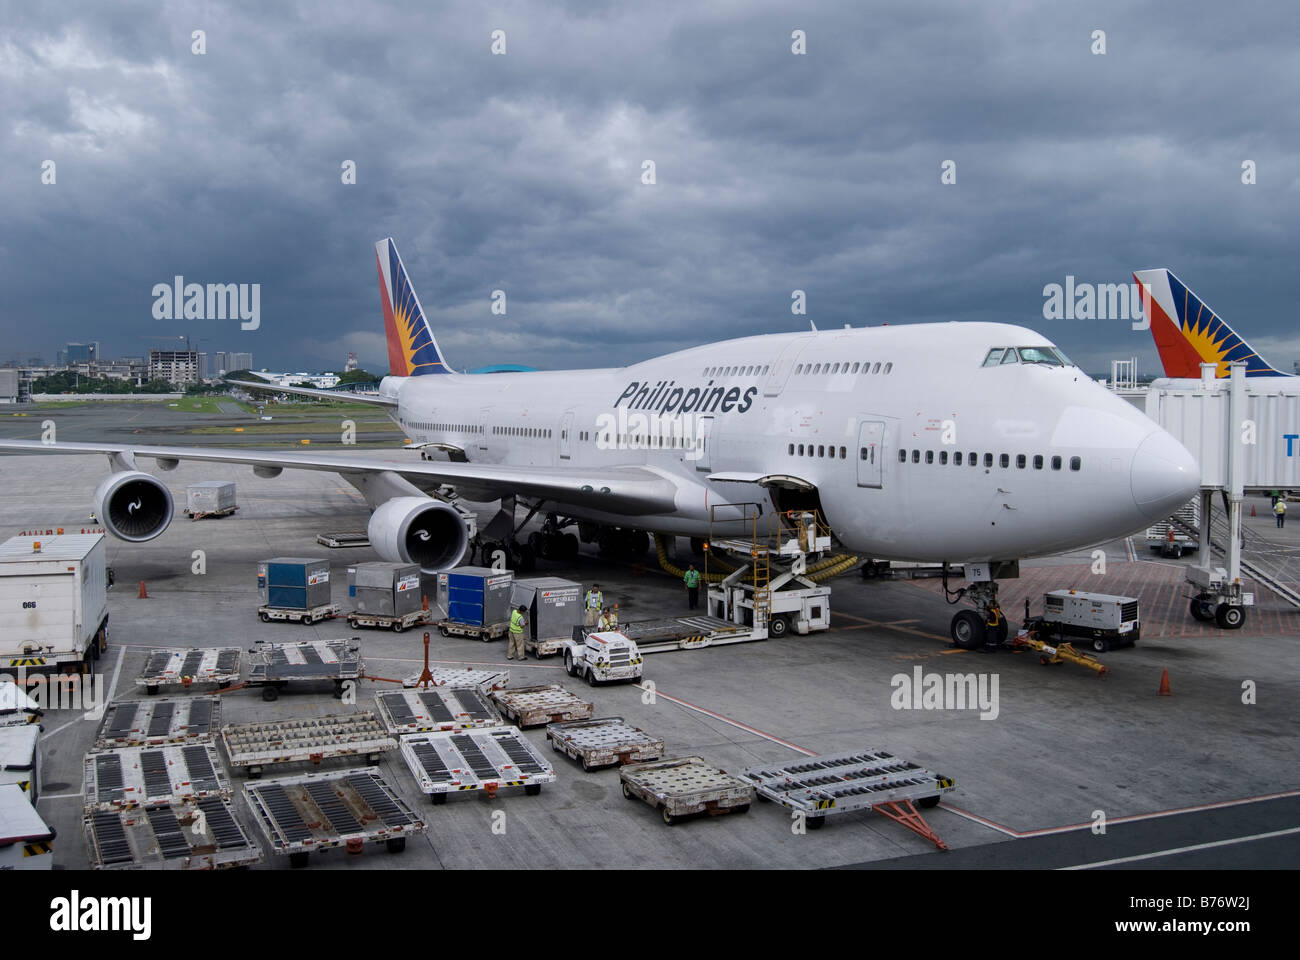 Philippine Airlines Boeing 747 geladen mit Fracht-Container, Manila International Airport, Manila, Philippinen Stockfoto